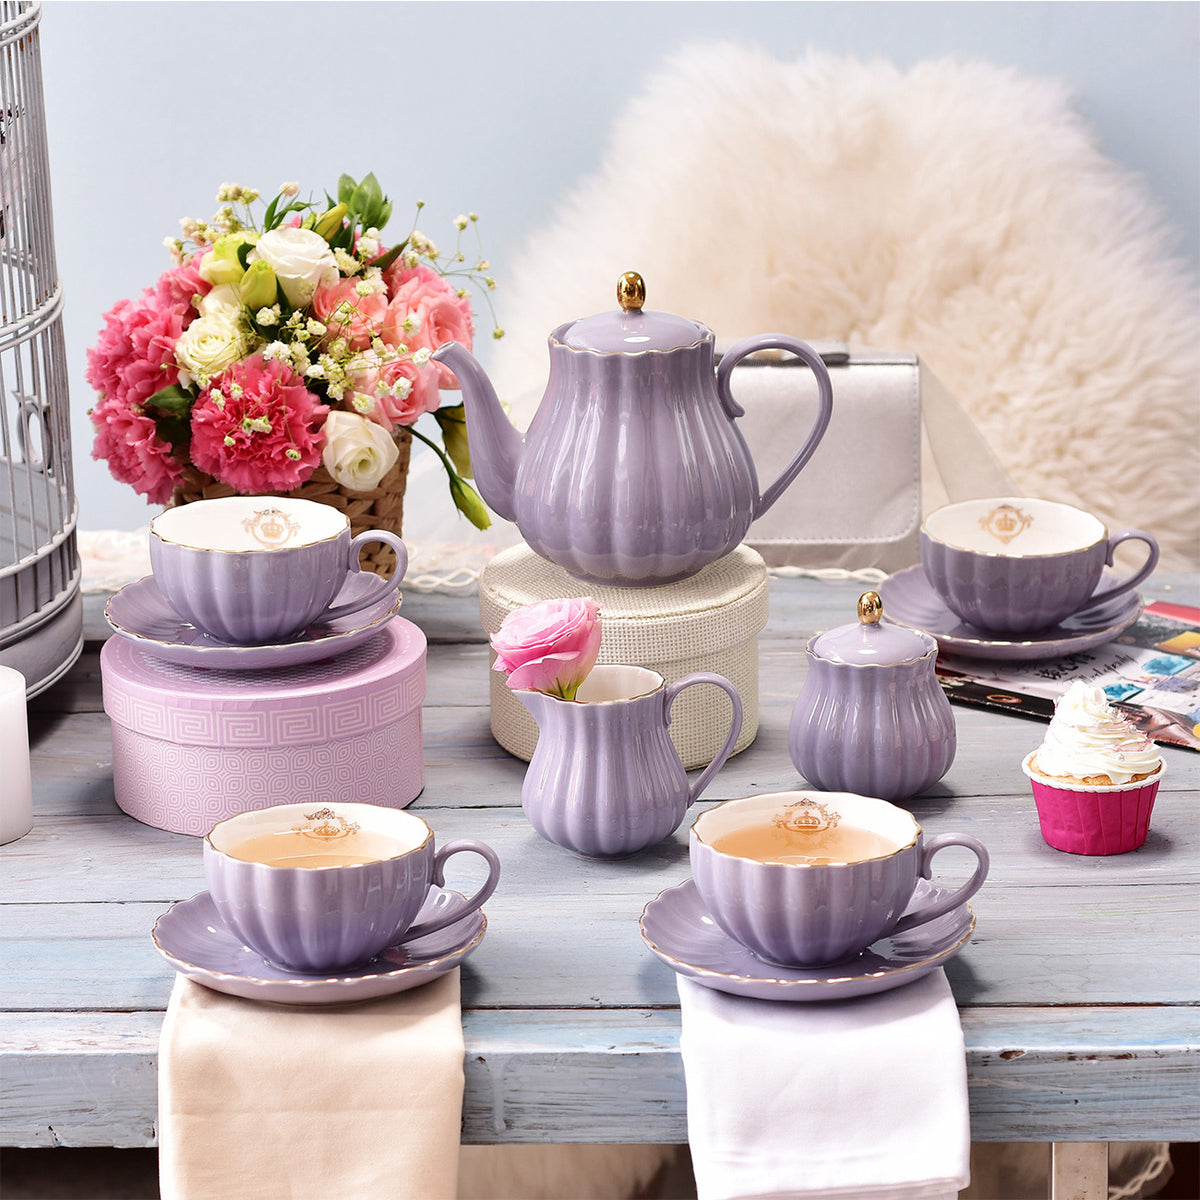 SWEEJAR Porcelain Espresso Cup & Saucer Set – Sweejar Home